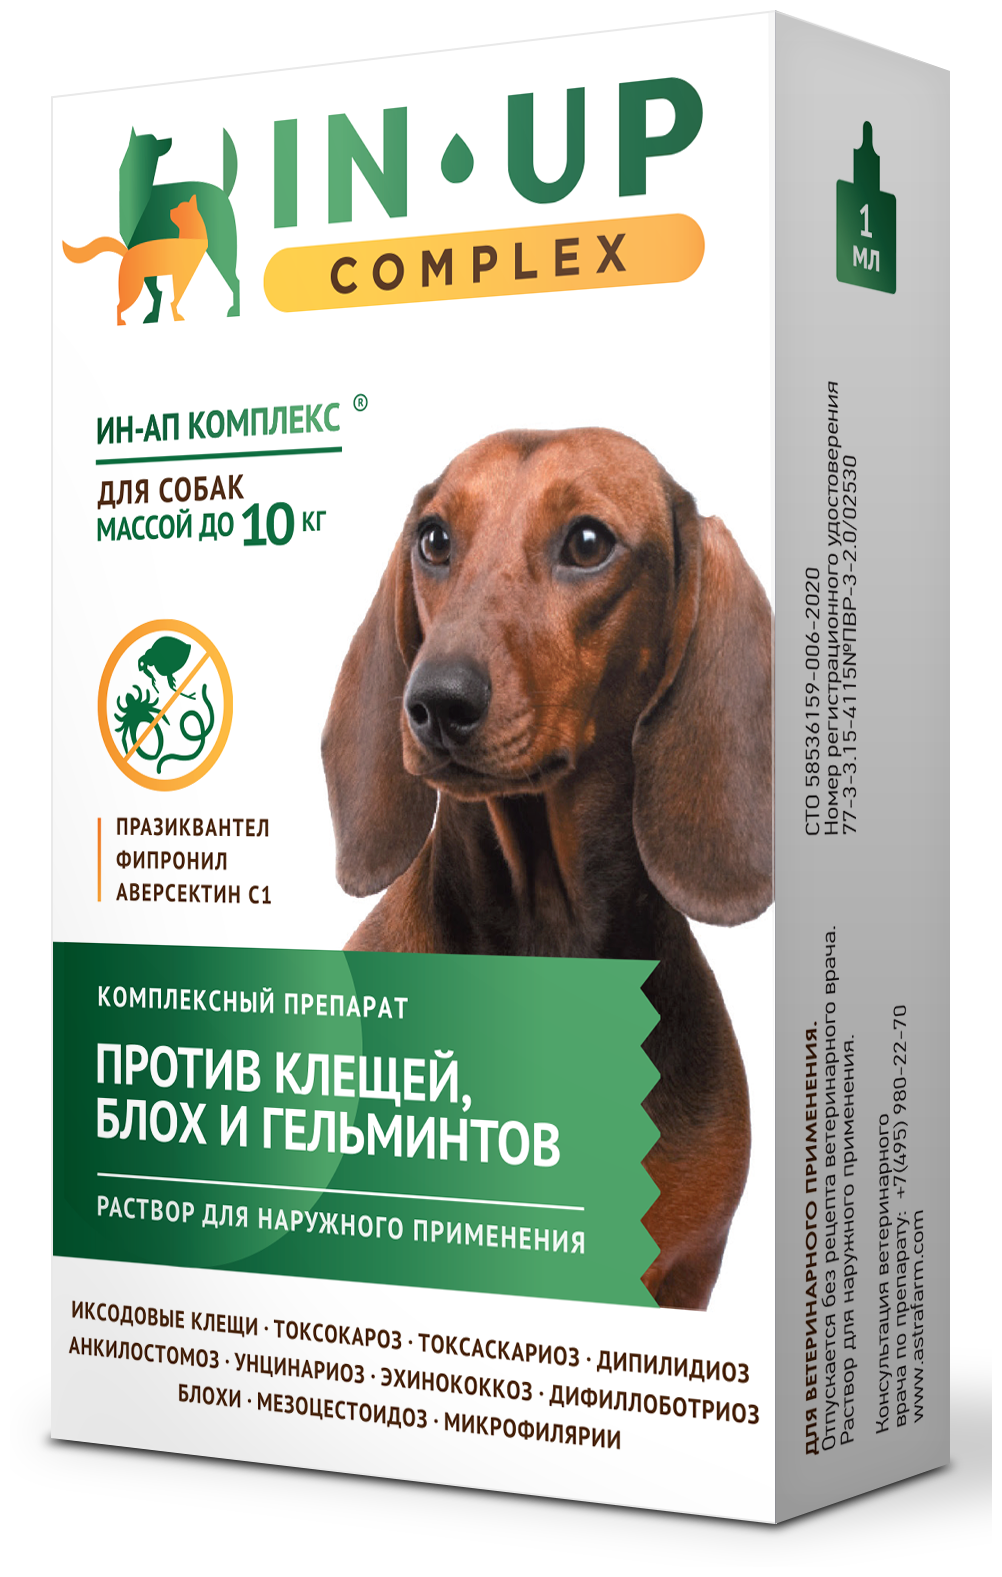 Ин-Ап Комплекс раствор (капли) от блох, клещей, вшей и гельминтов для собак массой до 10 кг, 1 мл